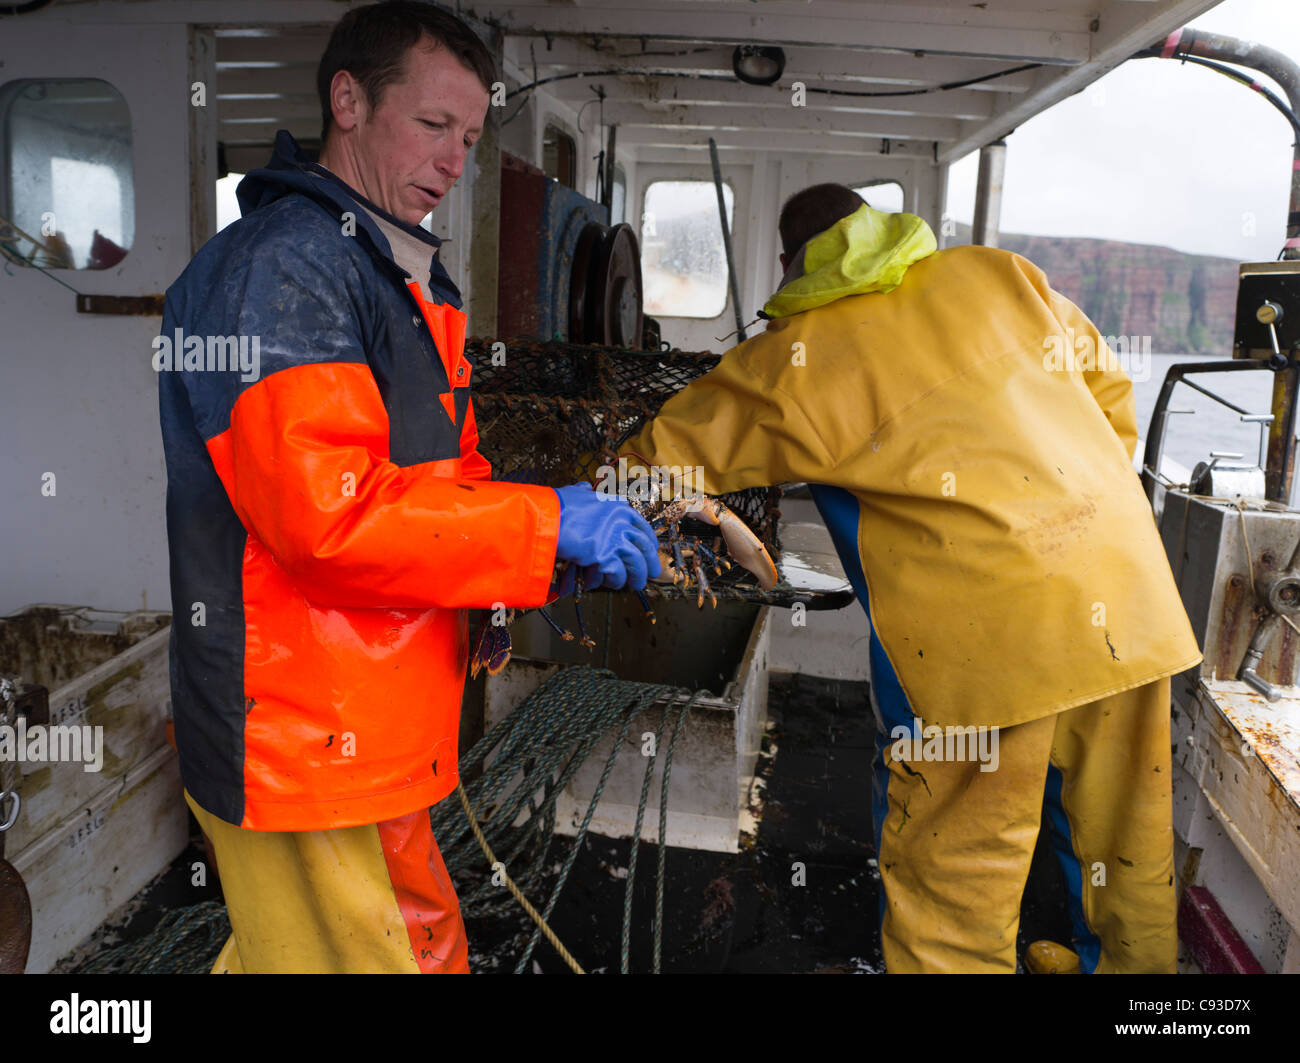 dh pescatori controllo di aragosta PESCA ORKNEY Creel a bordo barca da pesca scozia fresco man pot pescatore aragoste pesce Foto Stock